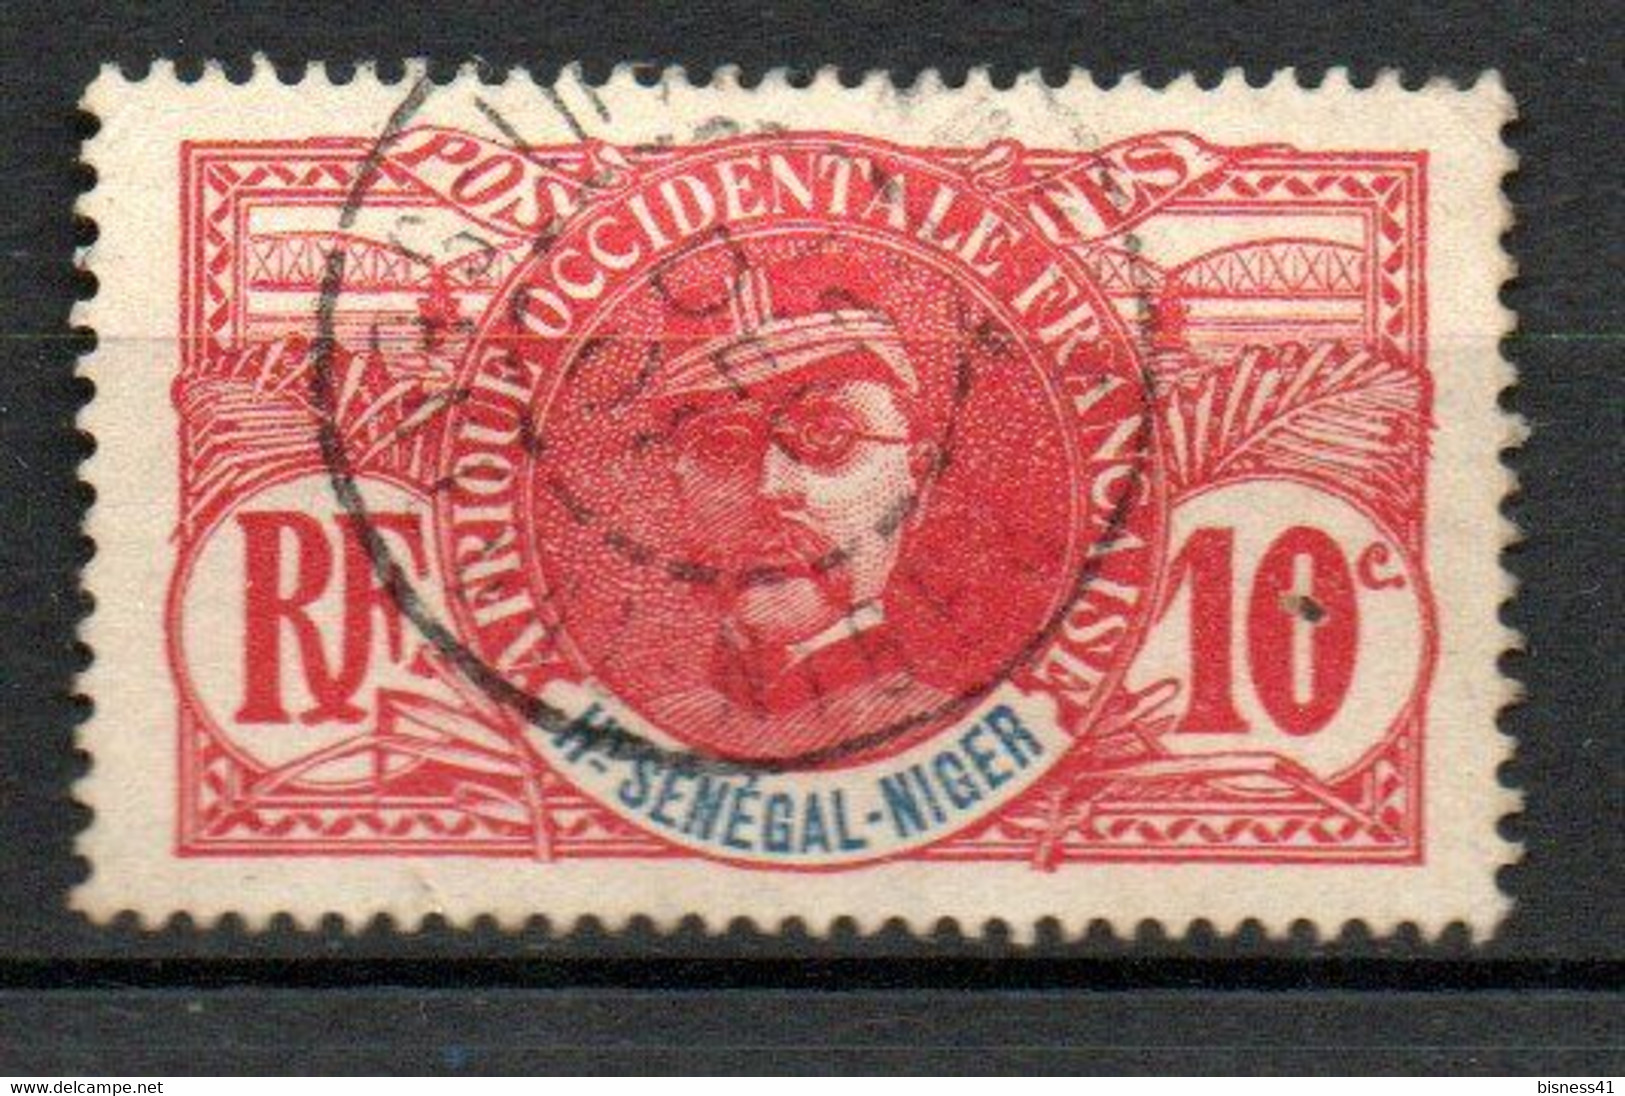 Col24 Colonies Haut Sénégal & Niger N° 5 Oblitéré Cote : 5,00  € - Used Stamps